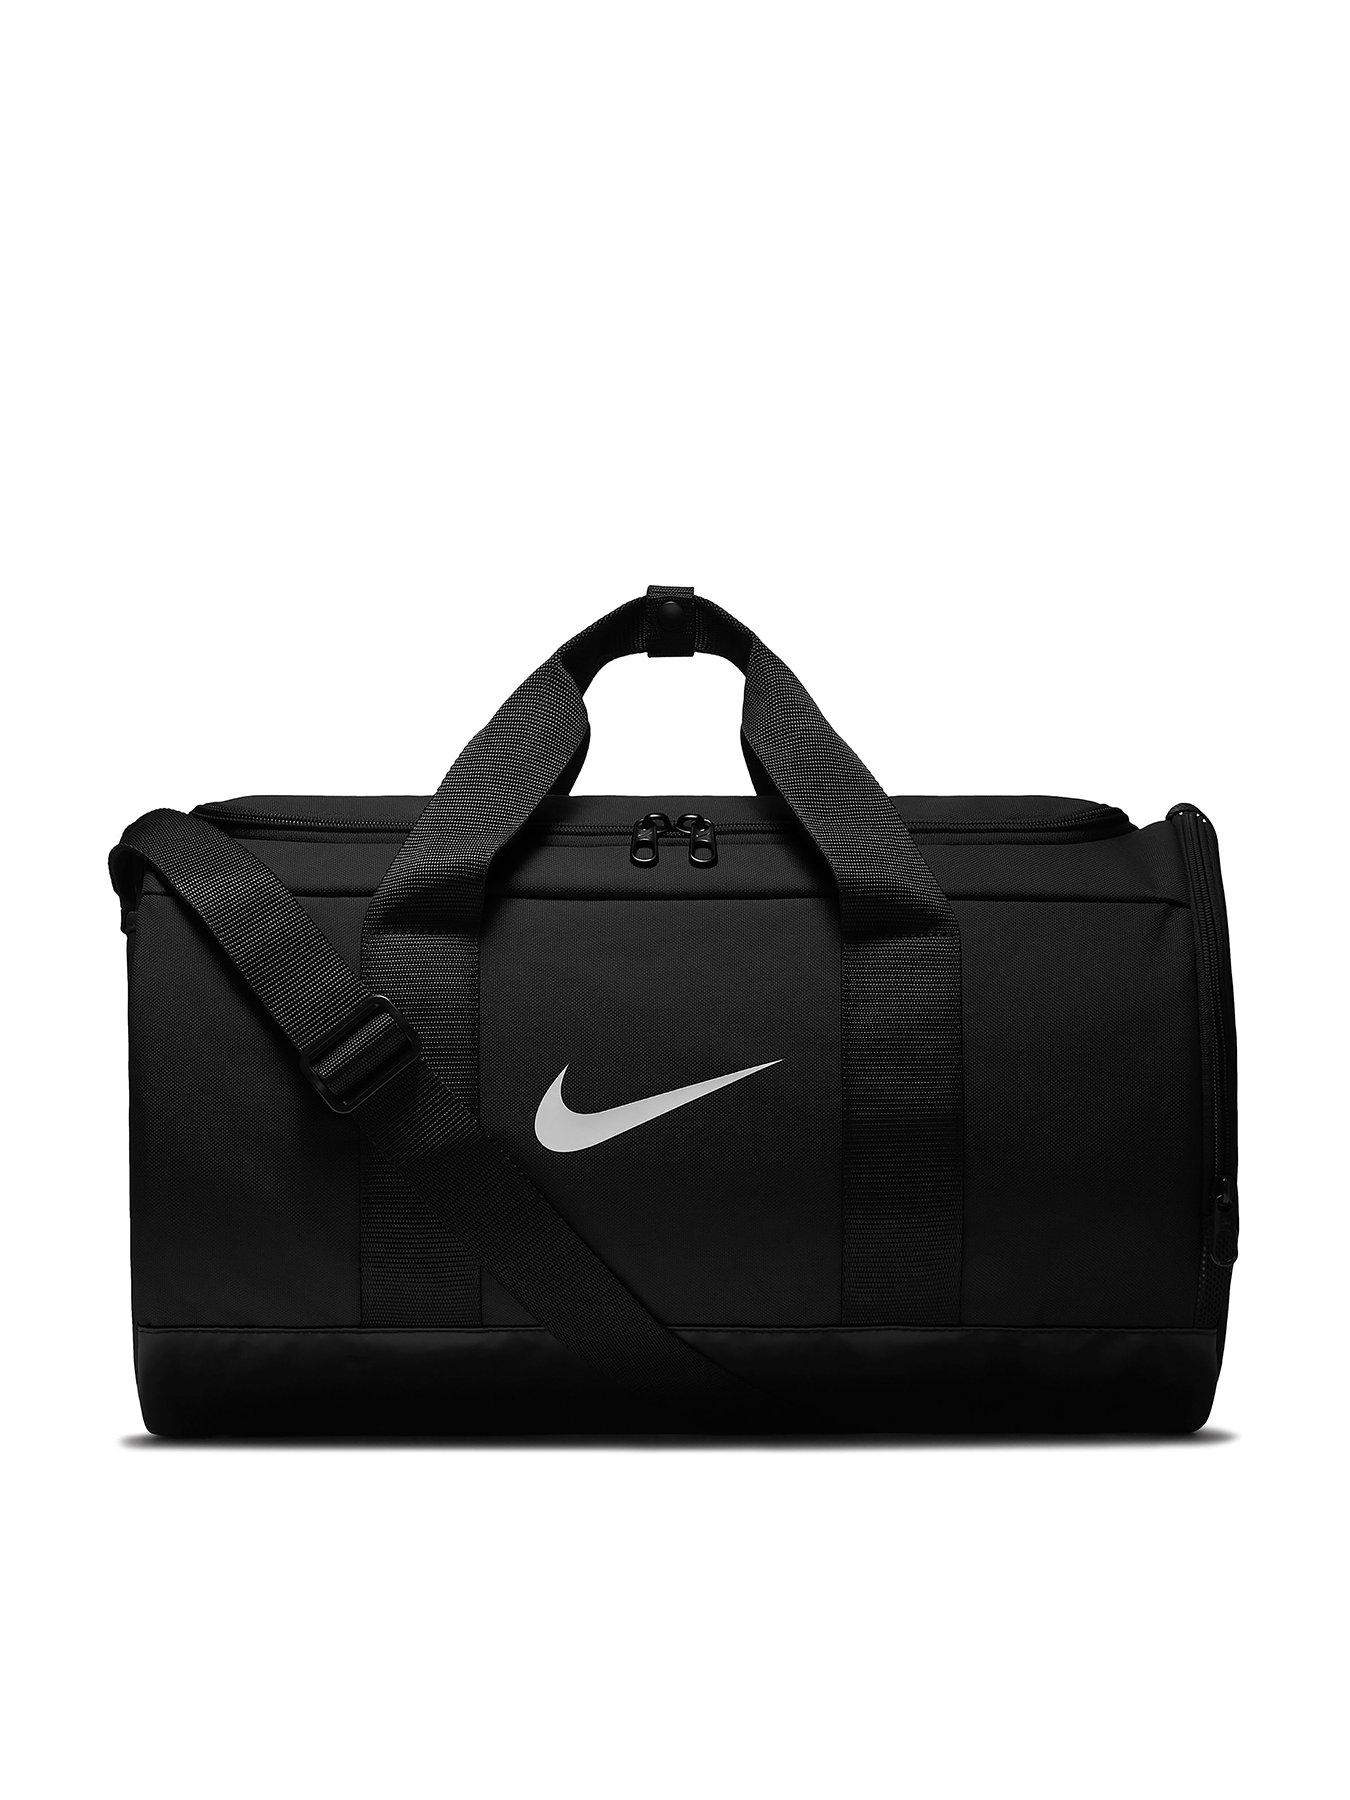 adidas team travel transformer bag